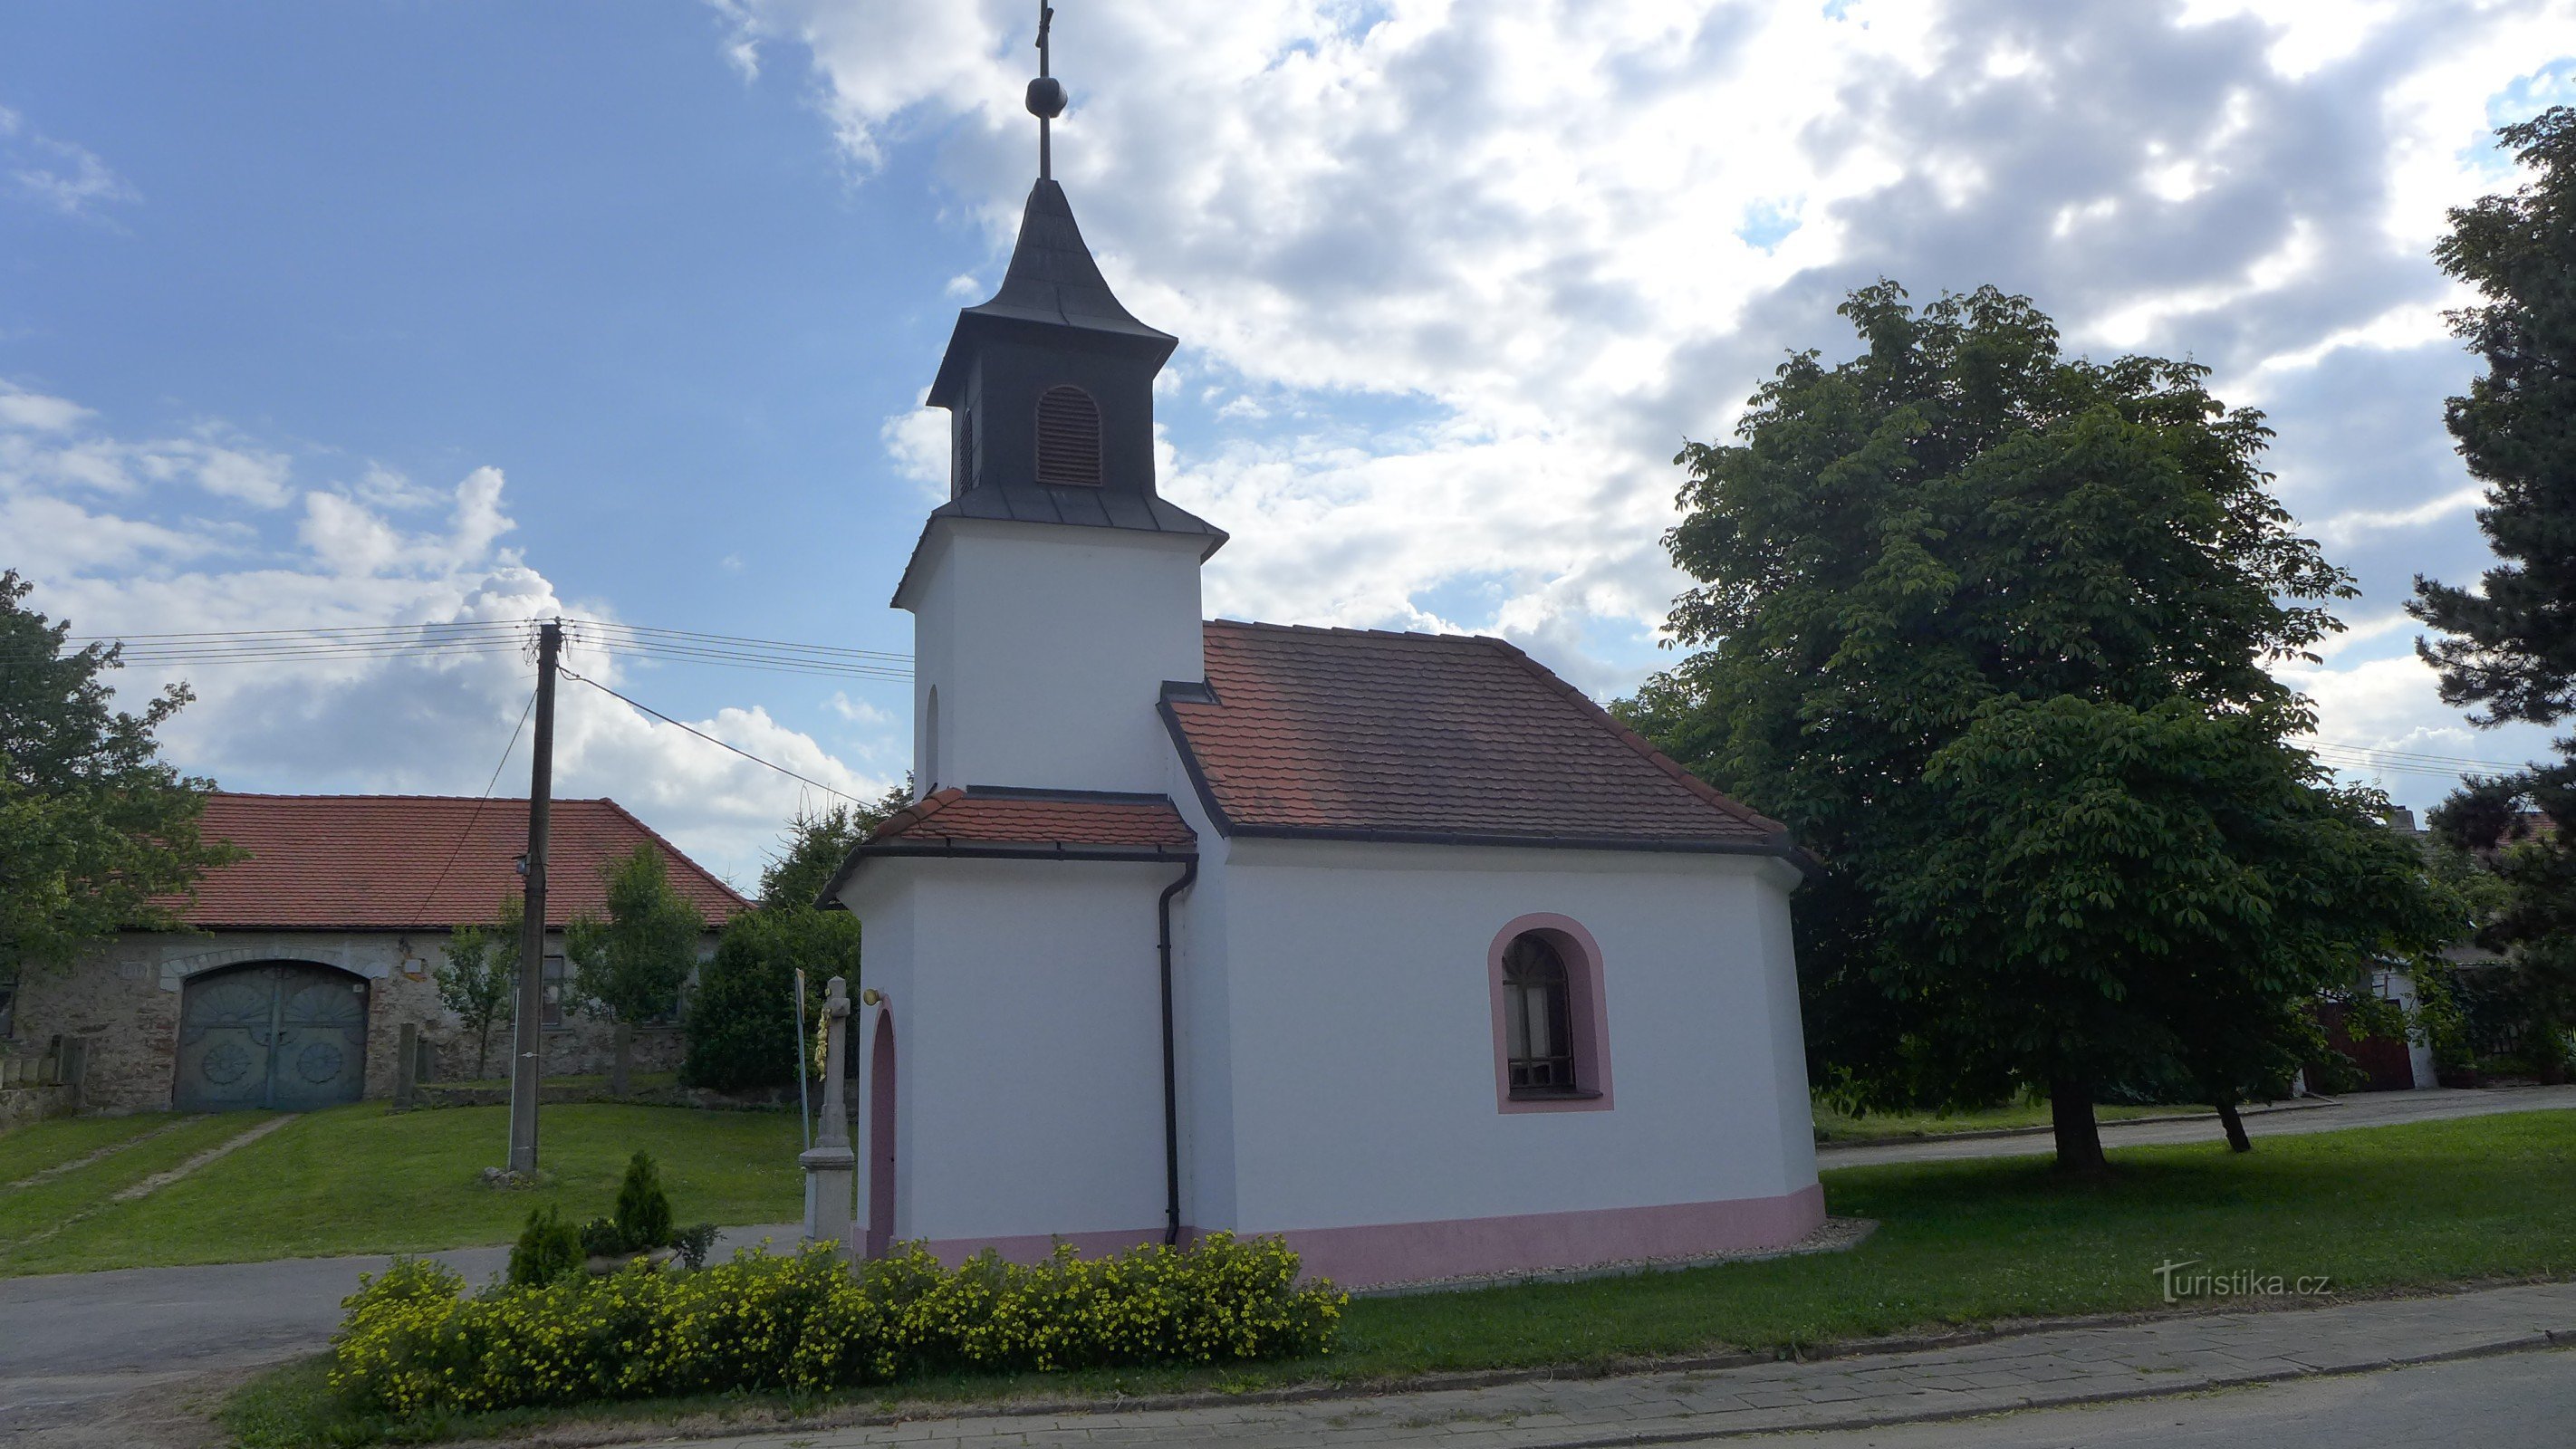 Dolní Vilémovice - chapel of St. Floriana